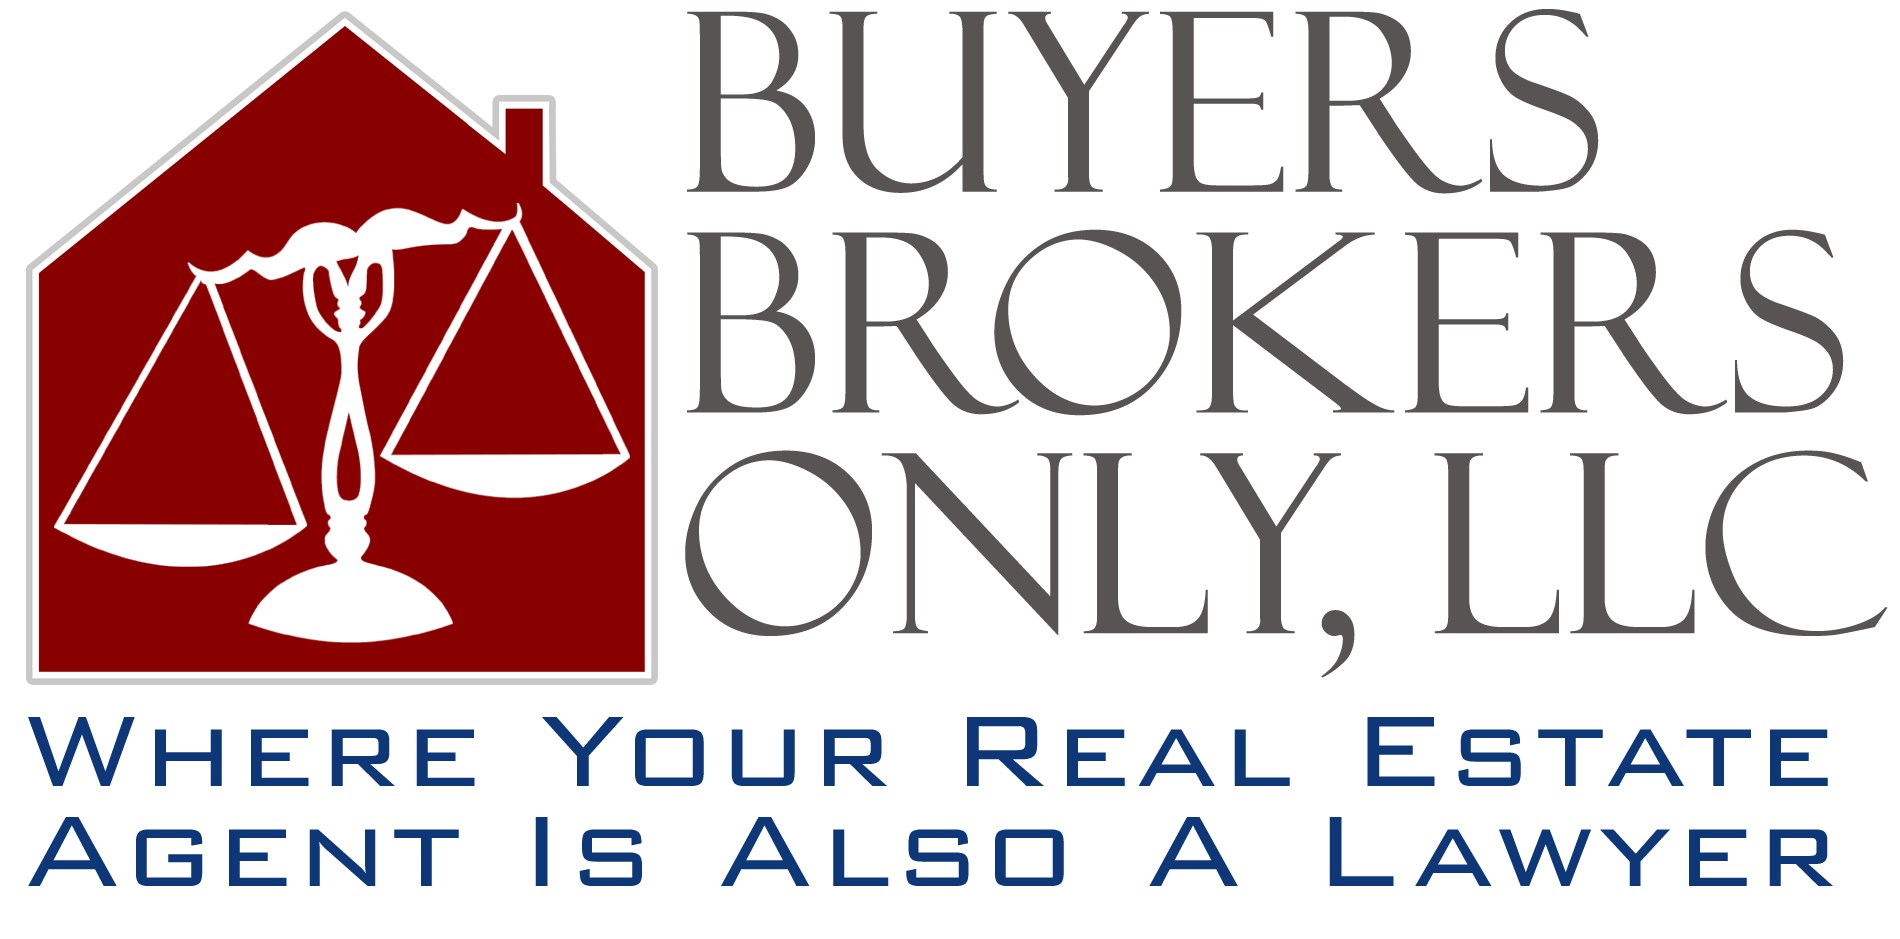 Buyers Brokers Only, LLC - Massachusetts Buyer Agent